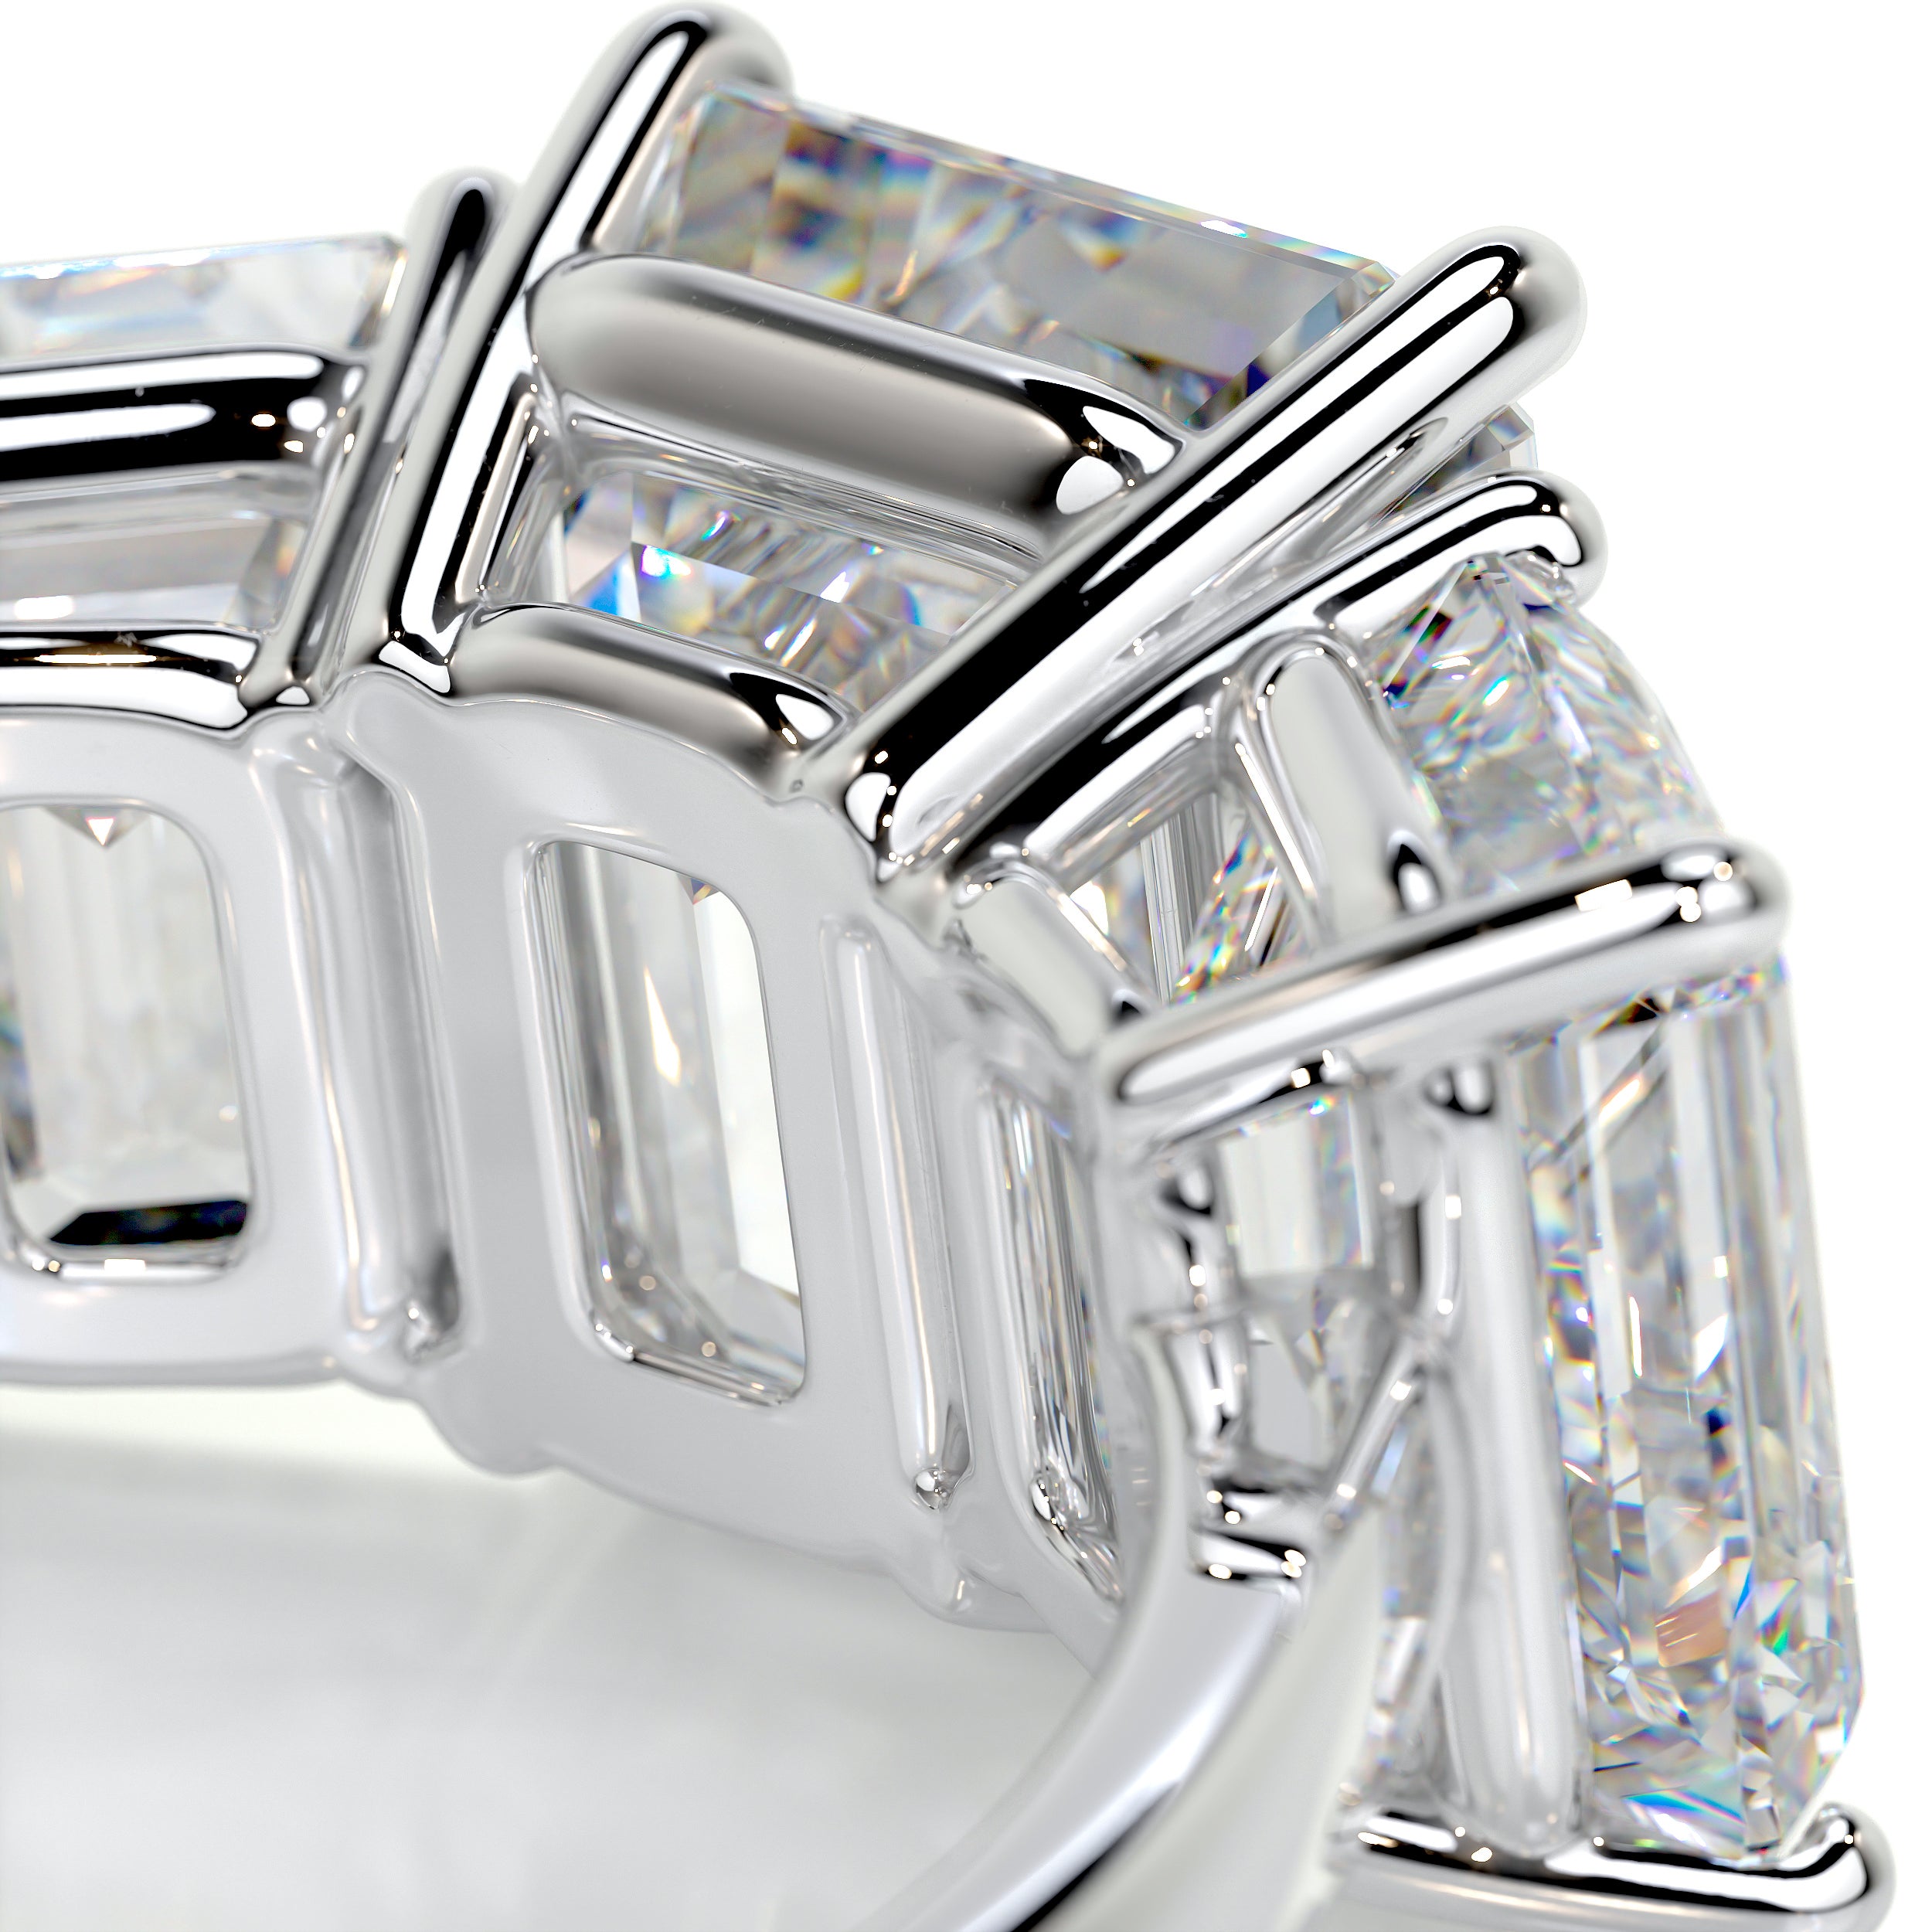 Amanda Diamond Engagement Ring   (4 Carat) -14K White Gold